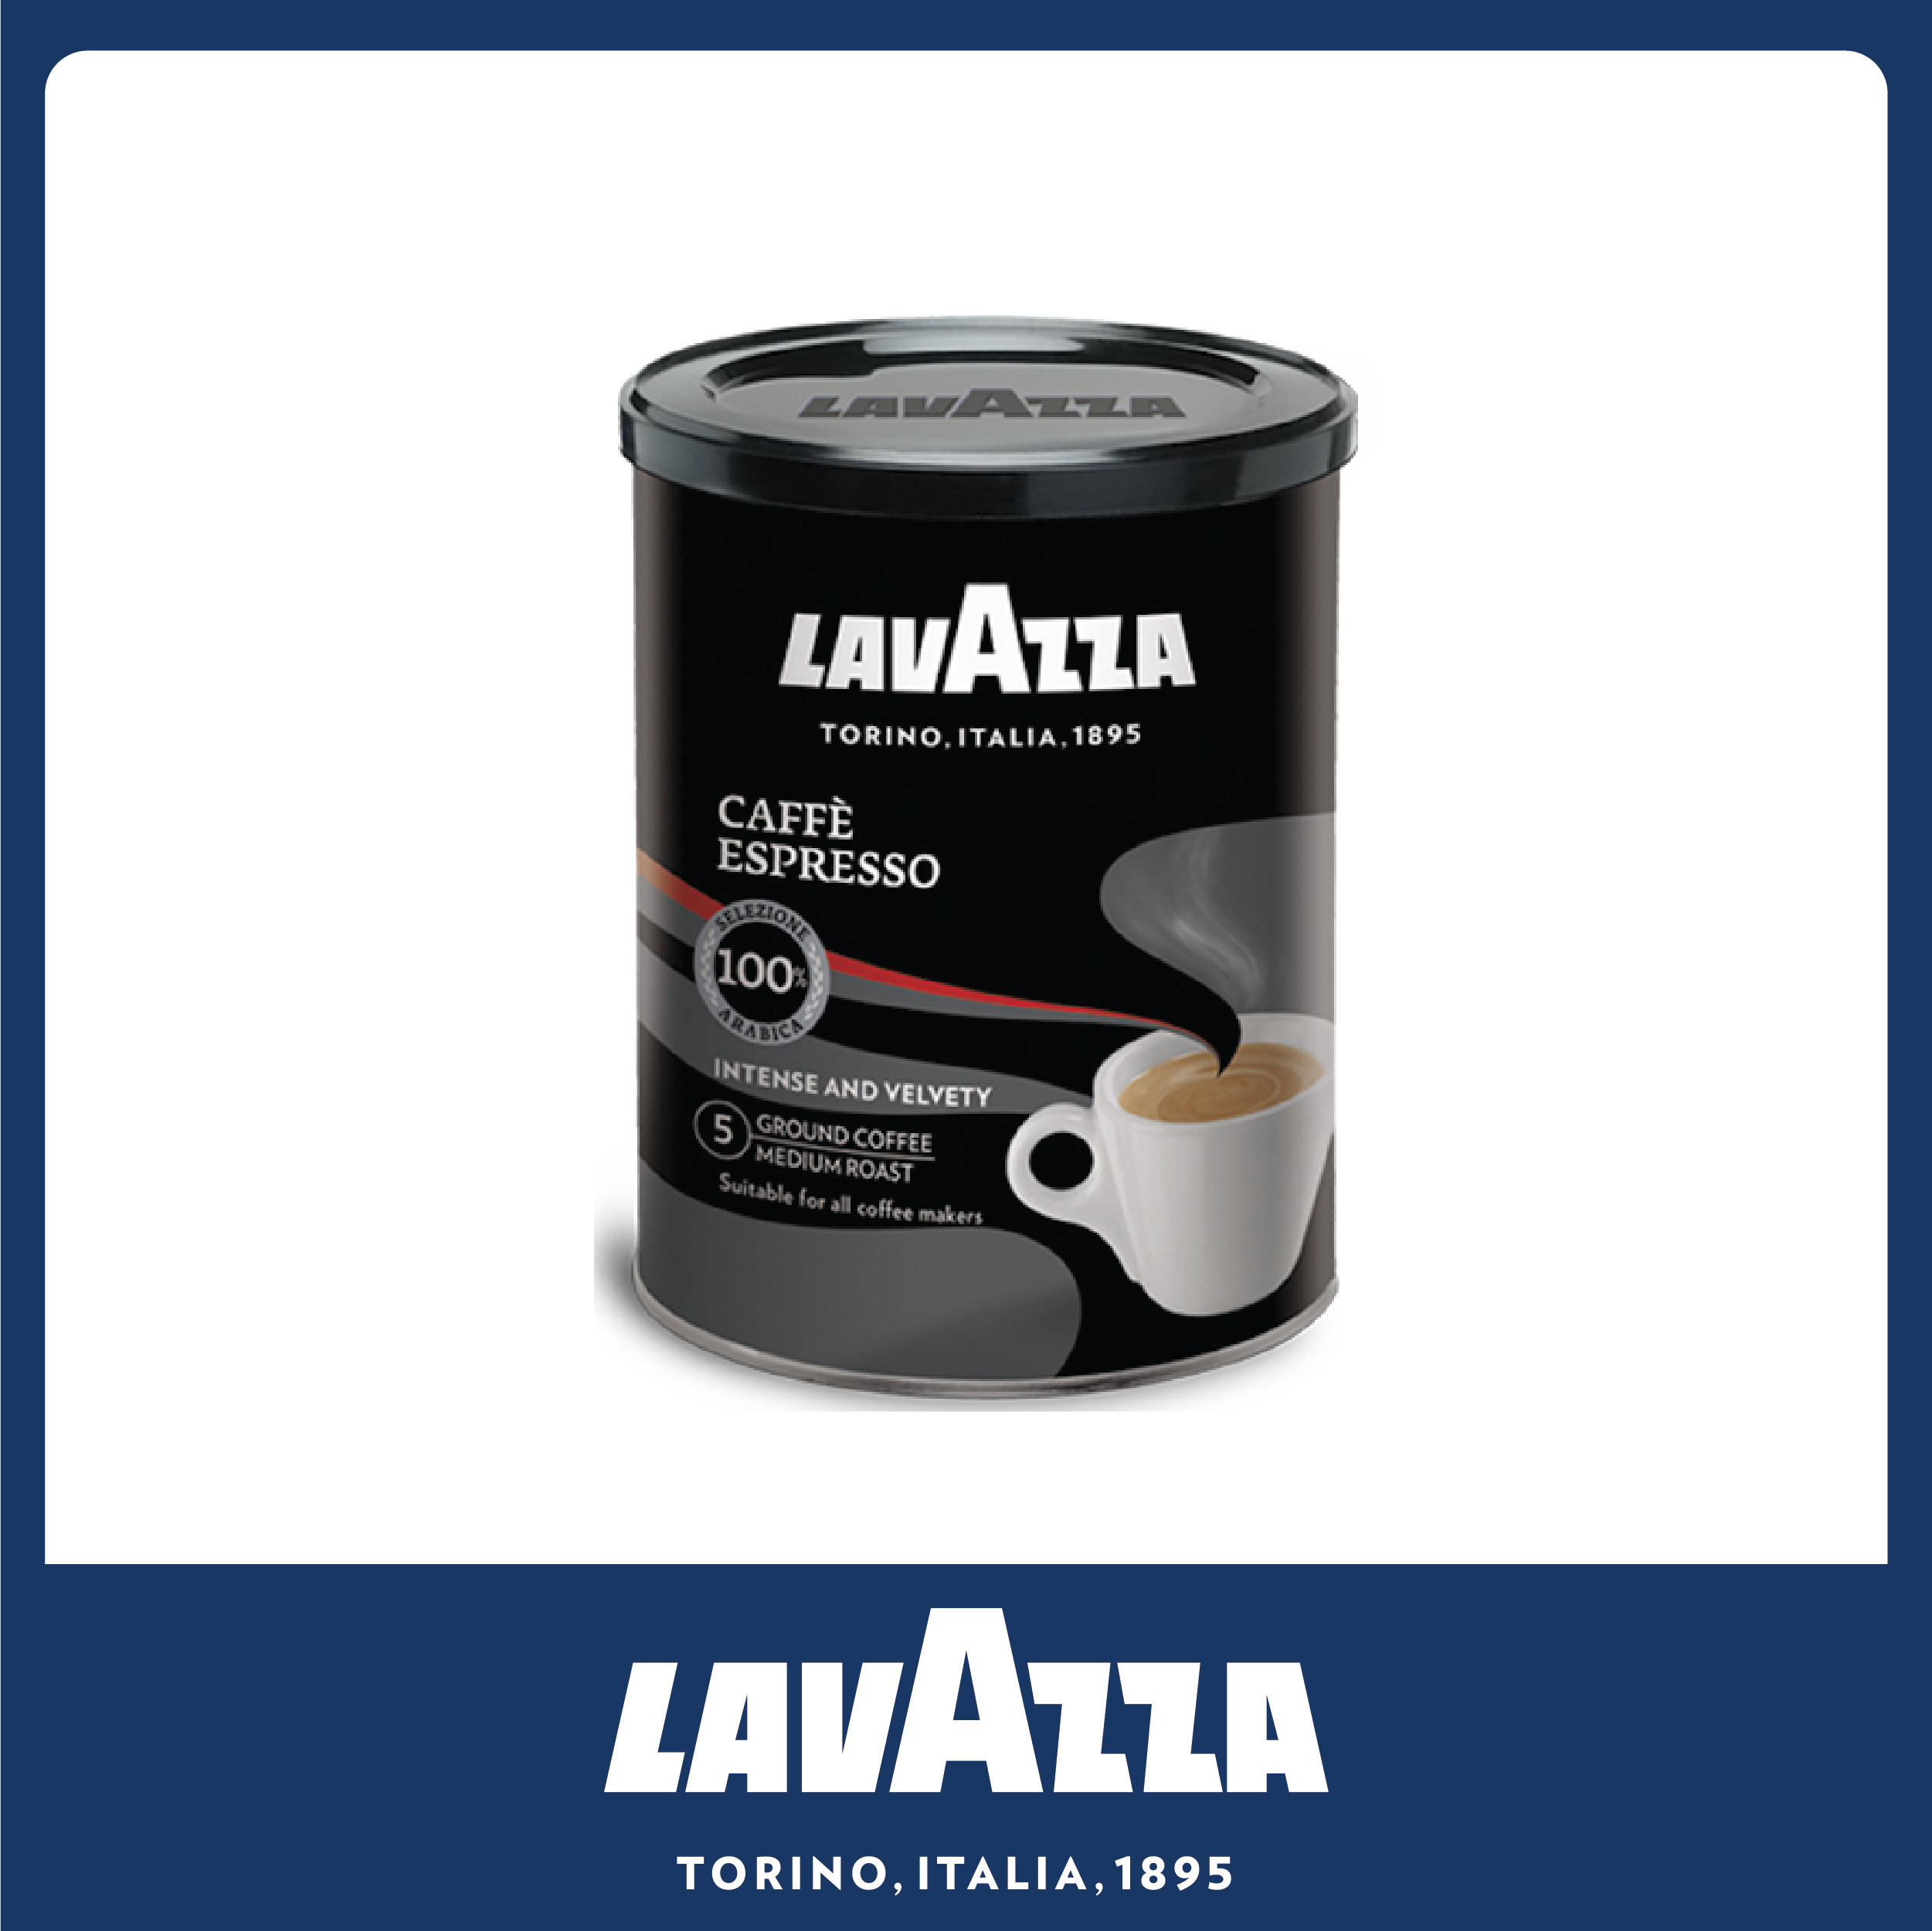 Lavazza Caffe Espresso Ground Coffee 250g ลาวาซซ่า กาแฟคั่วบด แคฟเฟ่ เอสเพรซโซ่ ขนาด 250 กรัม (8877)